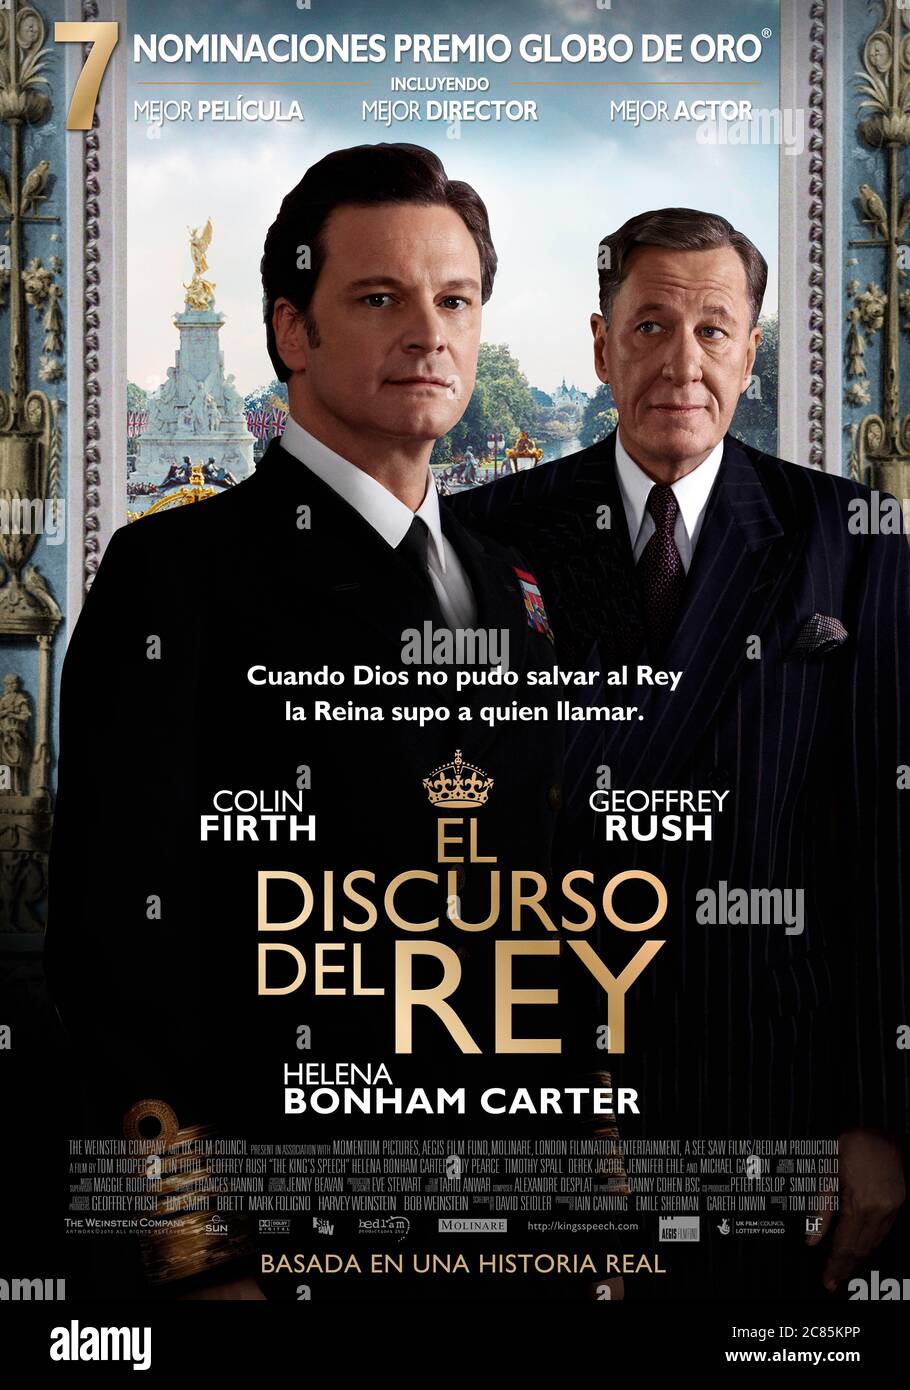 El Rey del año del discurso : 2010 Reino Unido / EE.UU. Director : Tom Hooper Colin Firth, Geoffrey Rush Poster español Oscar mejor película 2011 Foto de stock